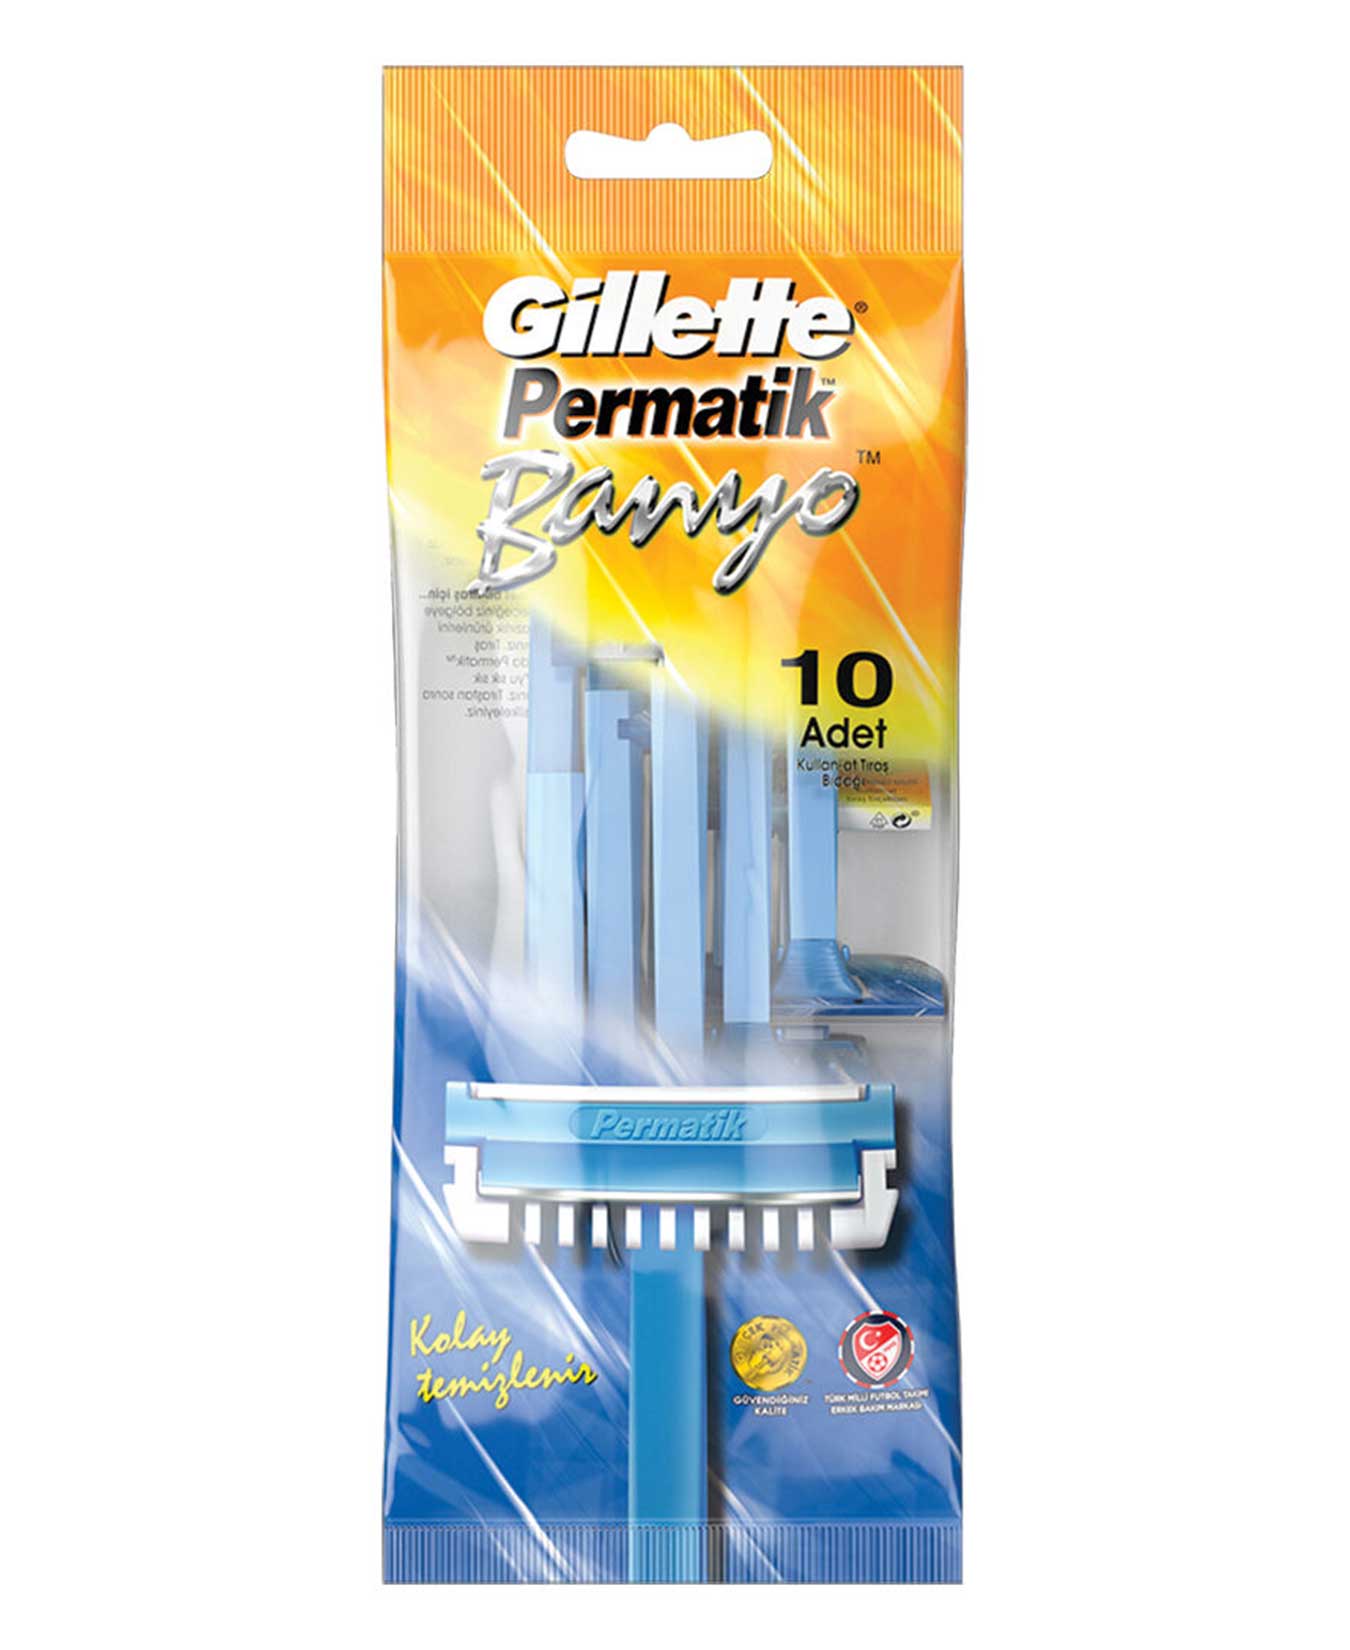 Gillette Permatik Disposal 10 pc 